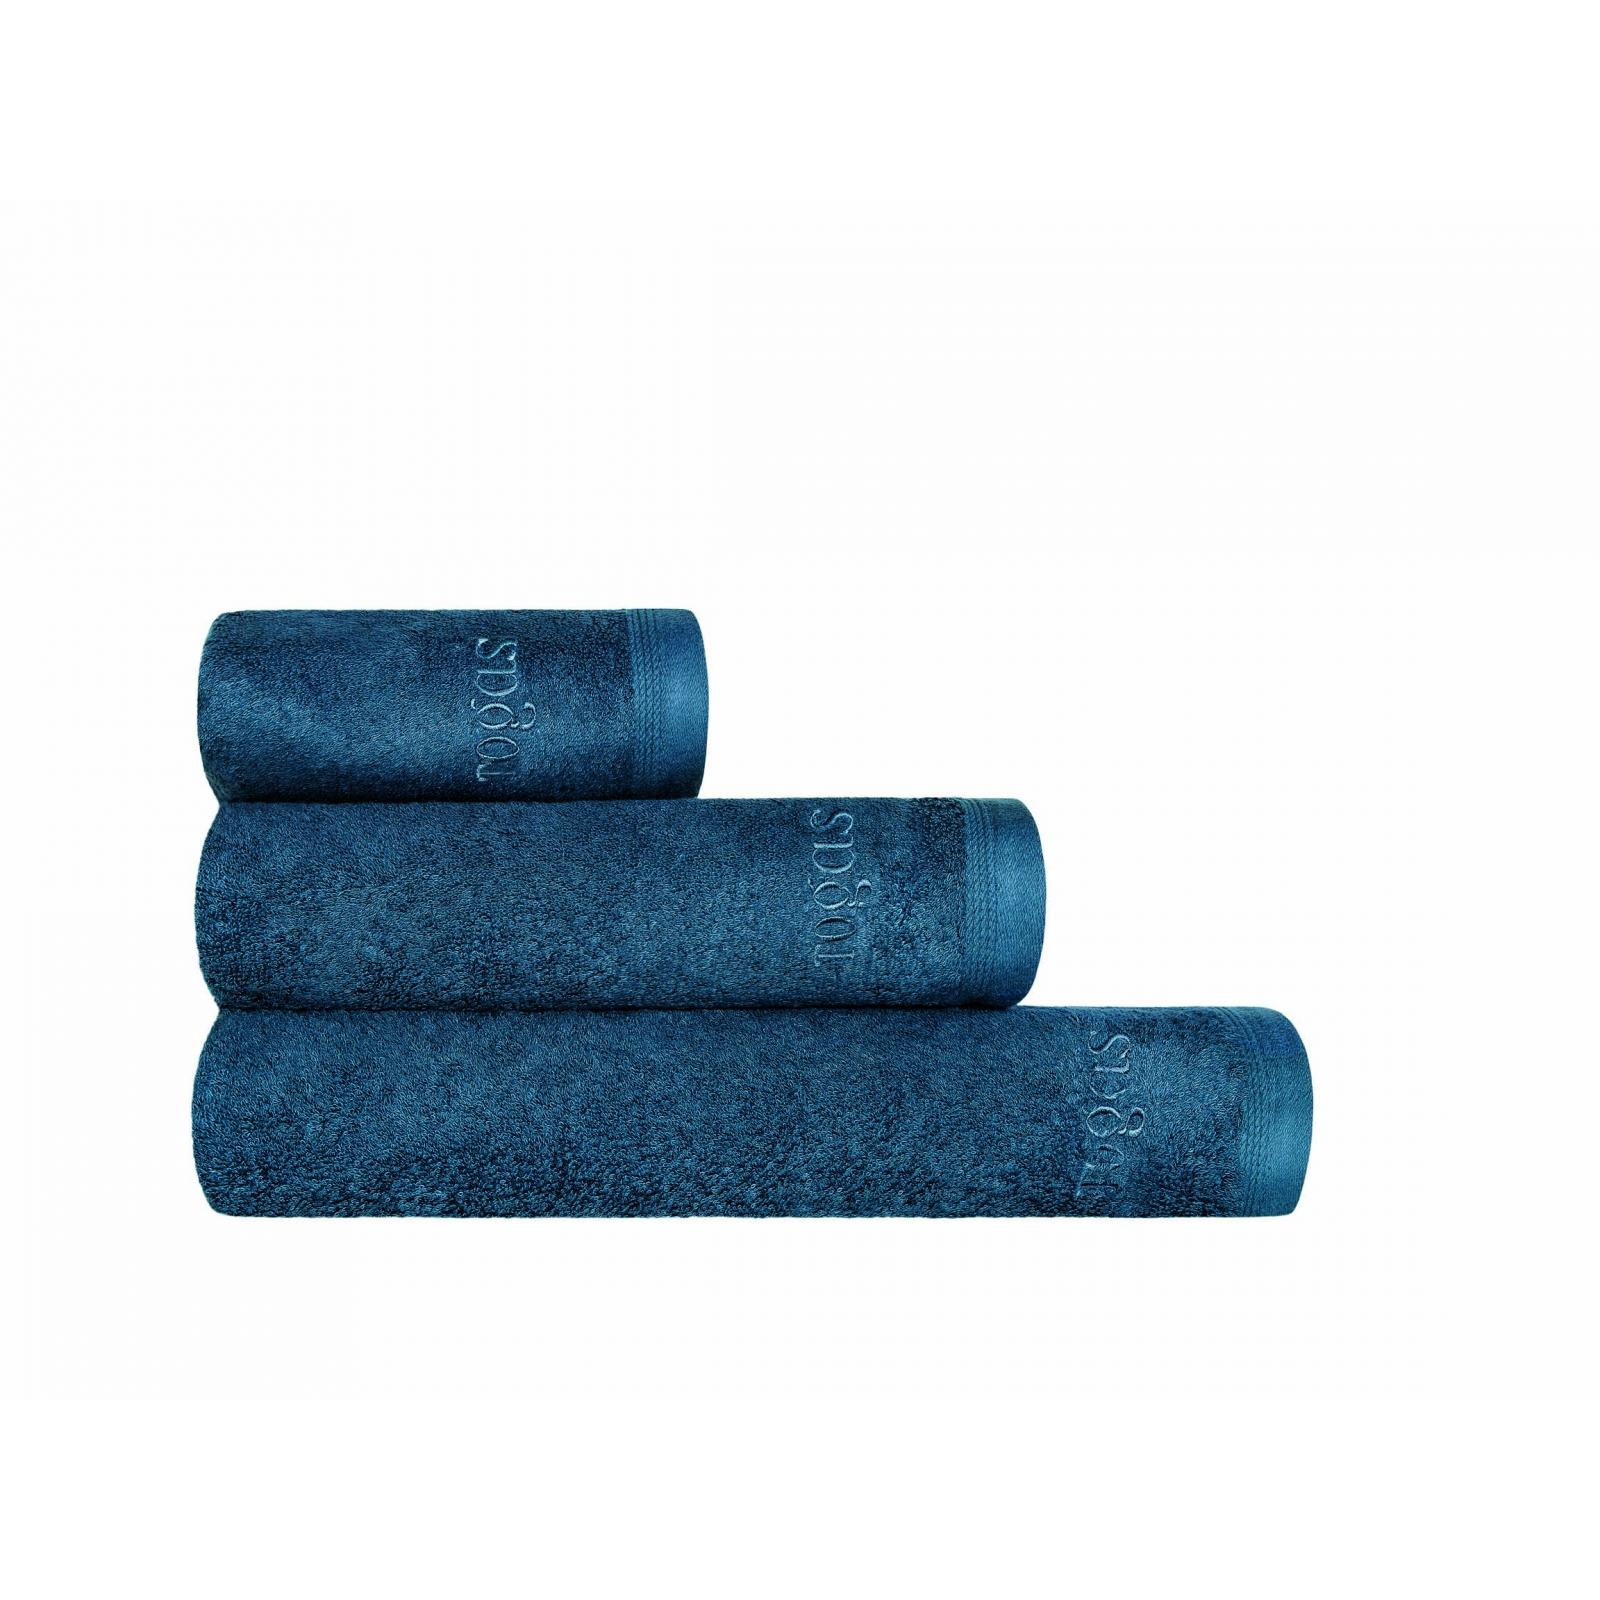 Полотенце Togas Пуатье темно-синее 40х60 см полотенце togas пуатье экрю 40х60 см